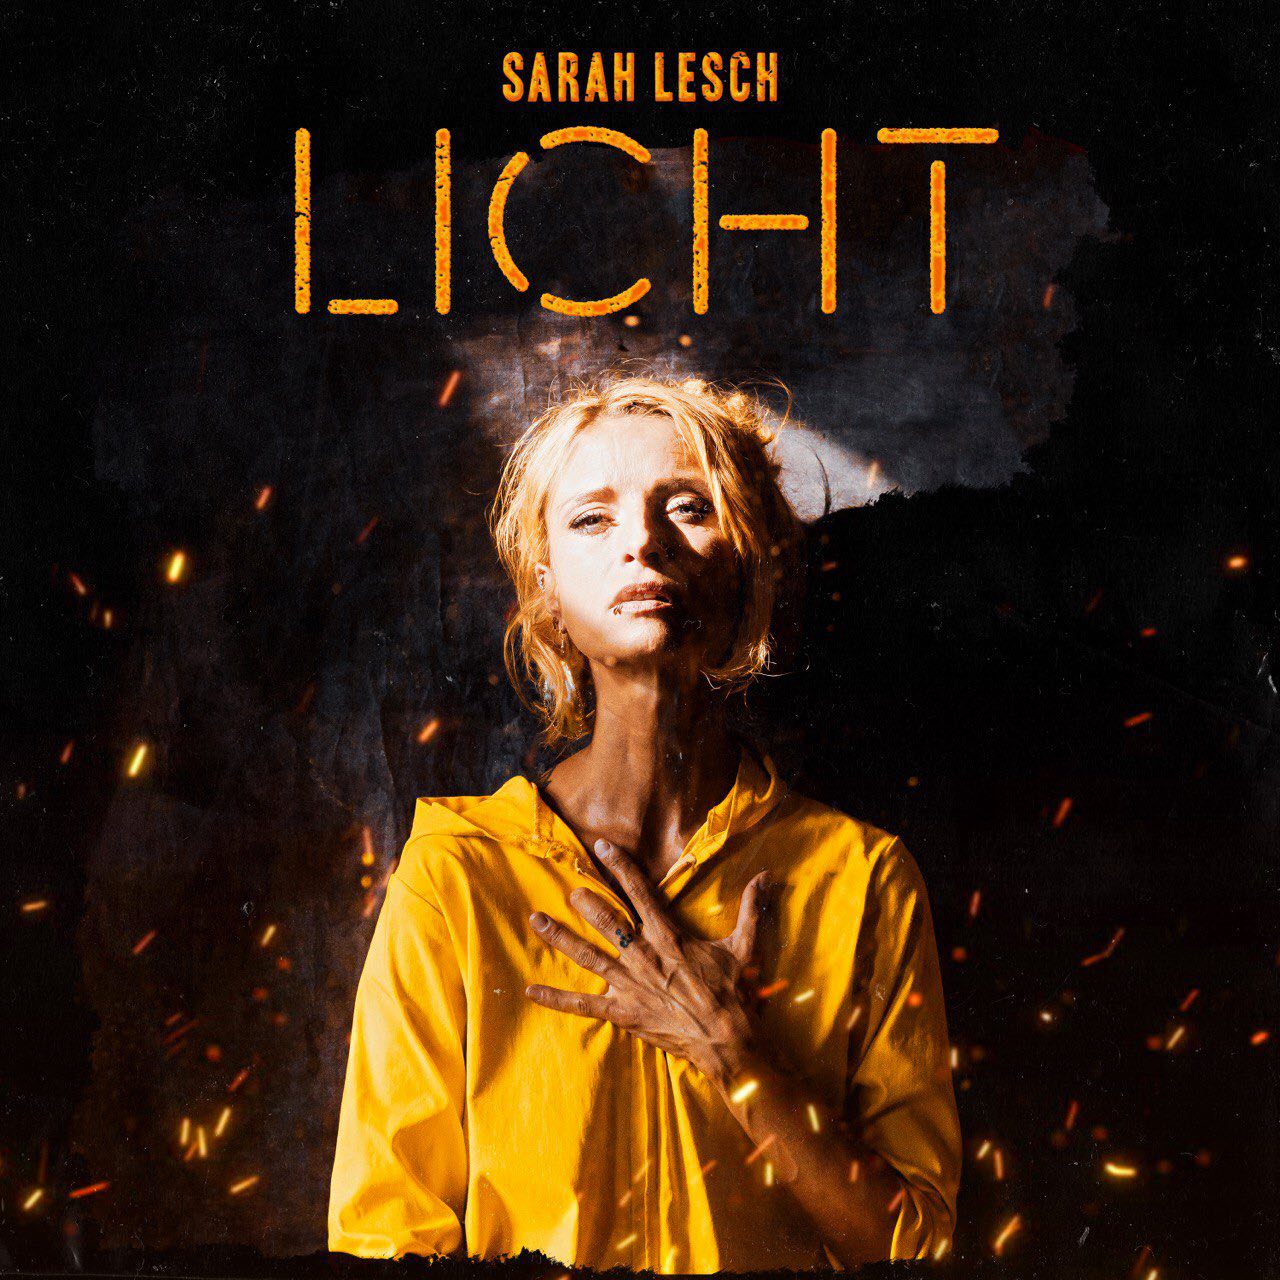 Sarah Lesch by Antje Kröger